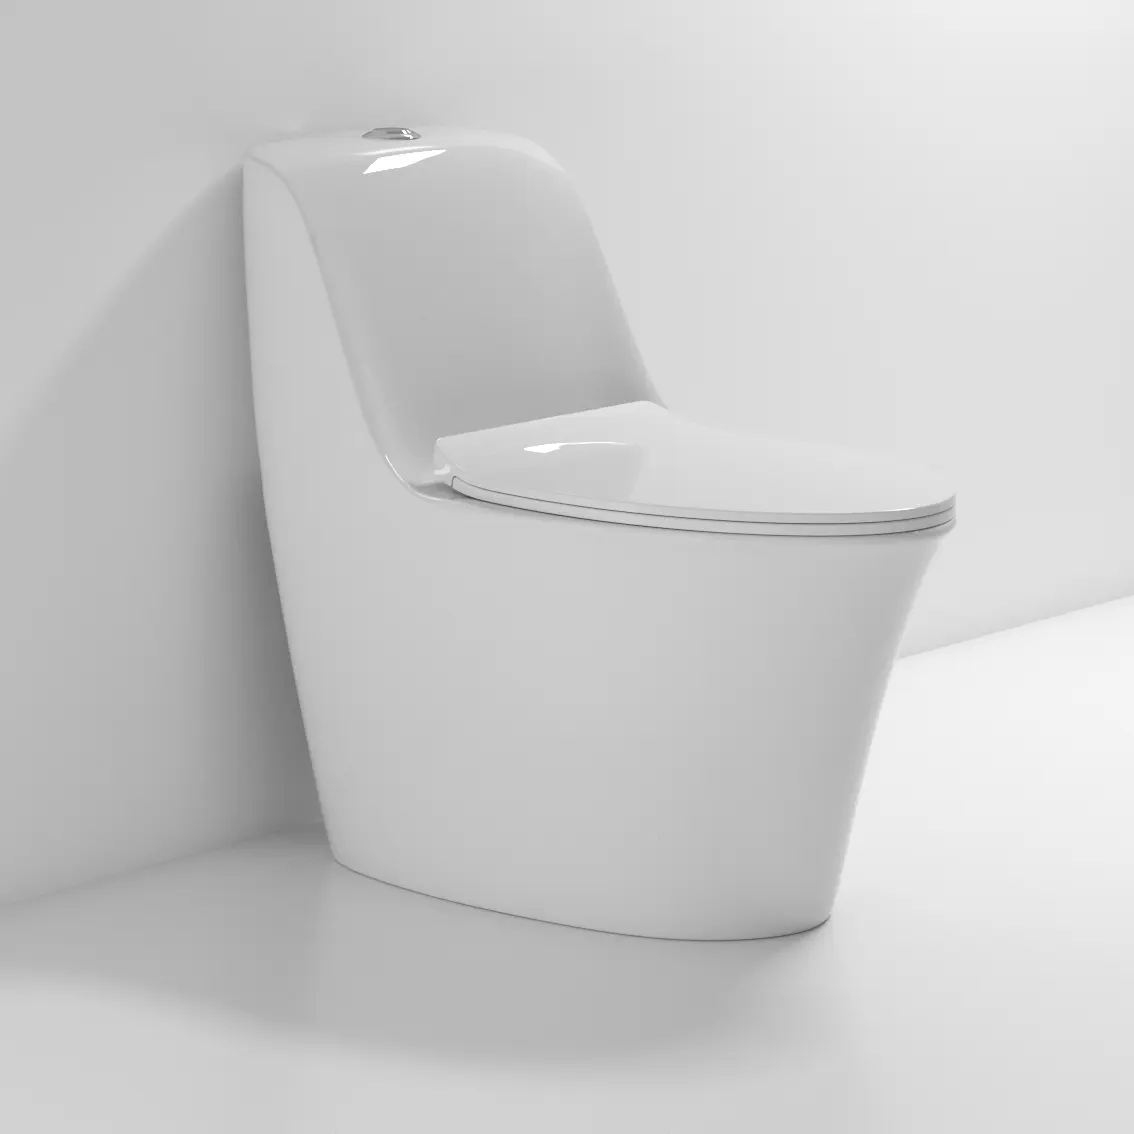 Nano esmalte novo modelo Venda quente de luxo louças sanitárias One piece barato Chinês WC S armadilha sifão flushing wc com tampa UF ou PP